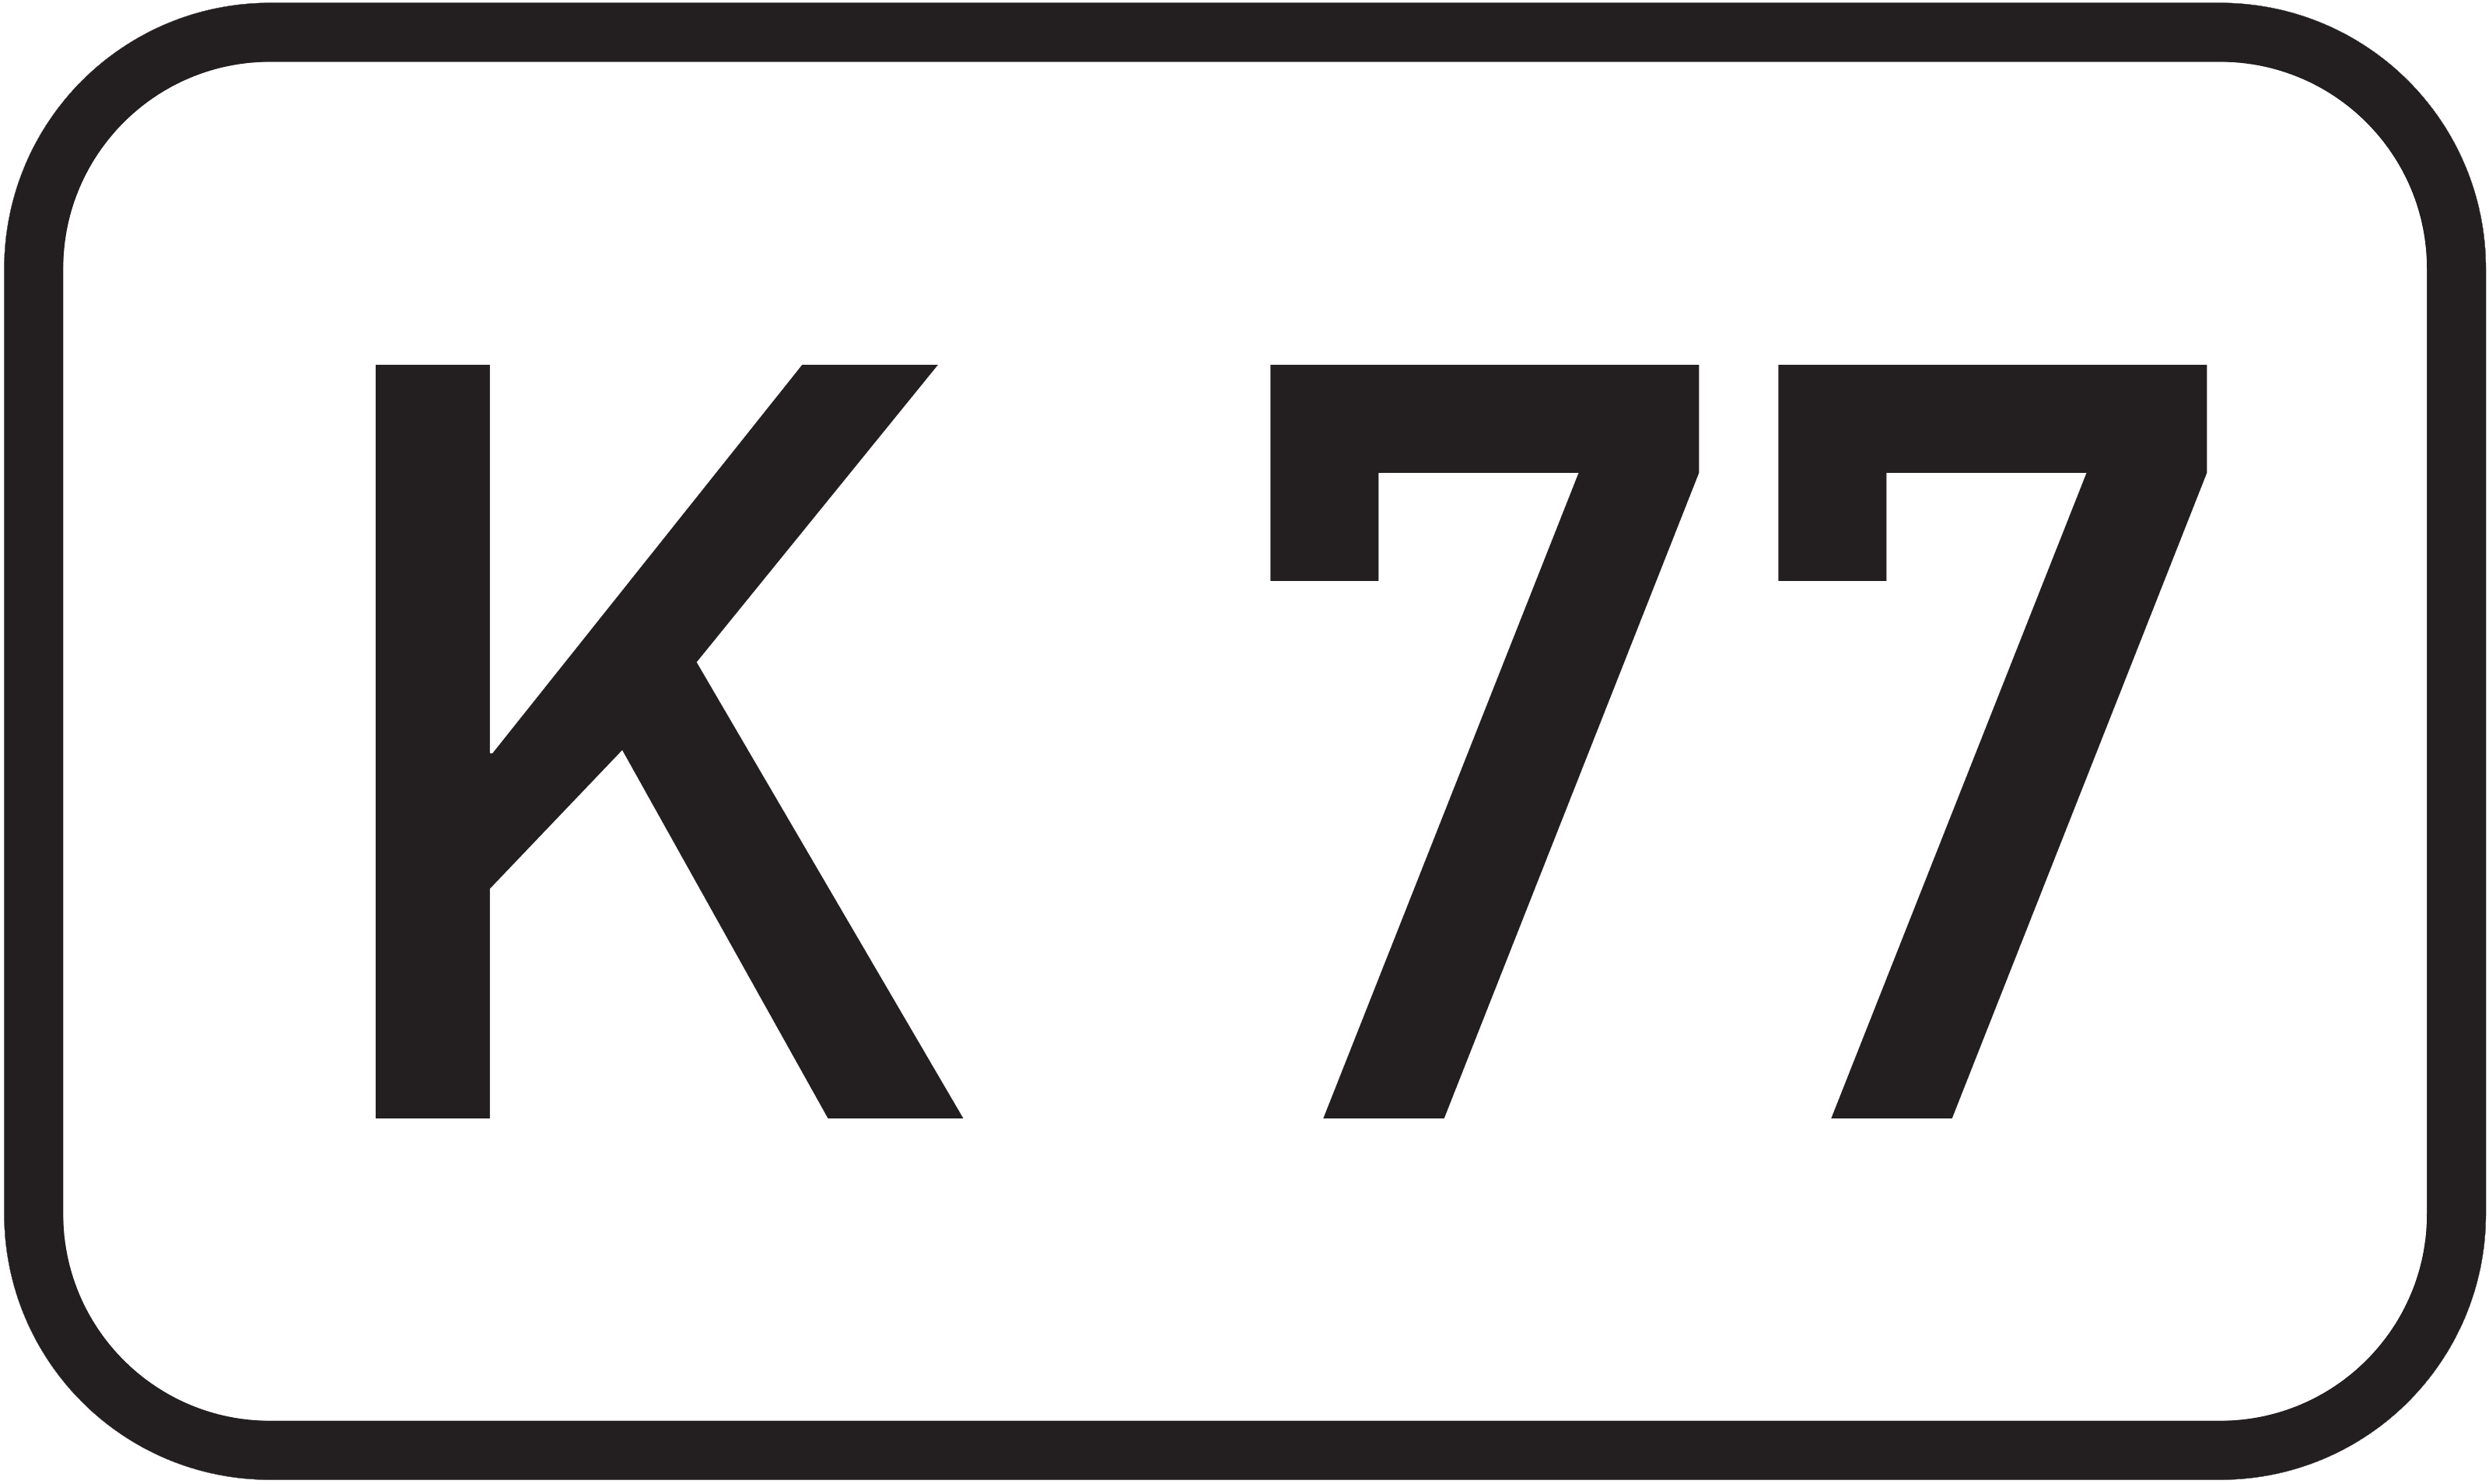 Bundesstraße K 77